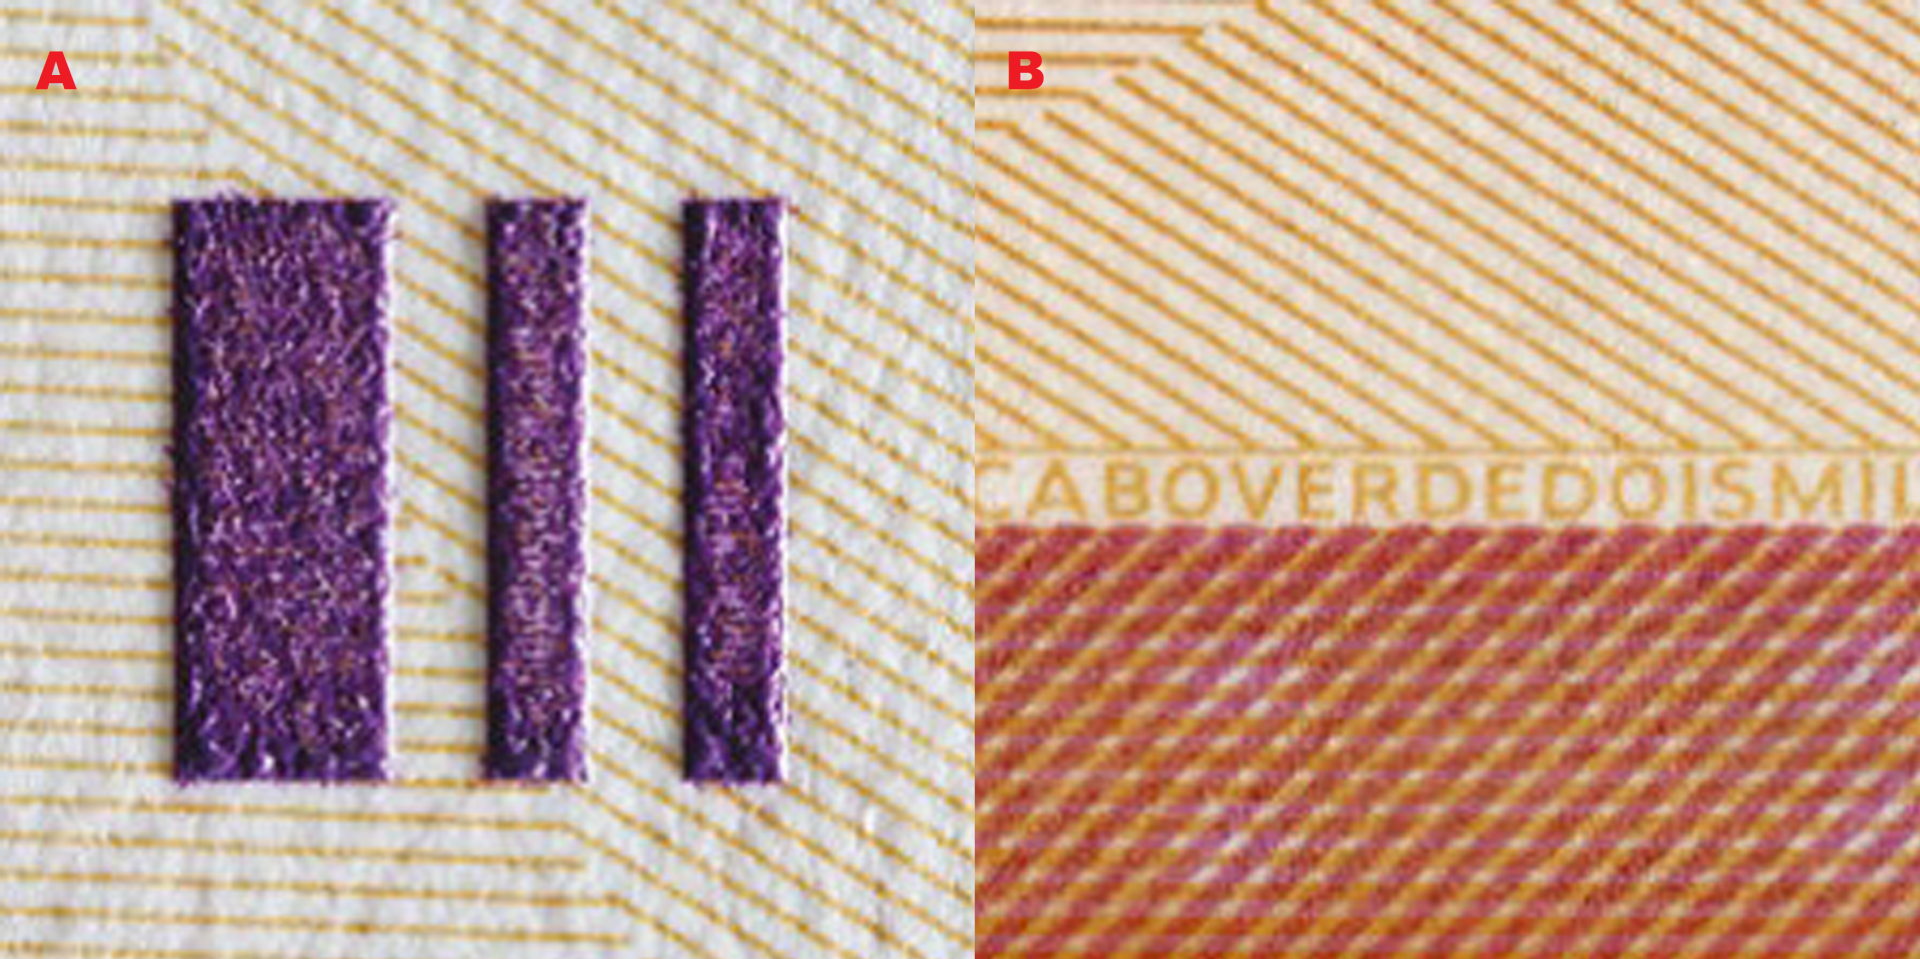 Obrázek 1  A) značka pro nevidomé, B) Pozitivní mikropísmo